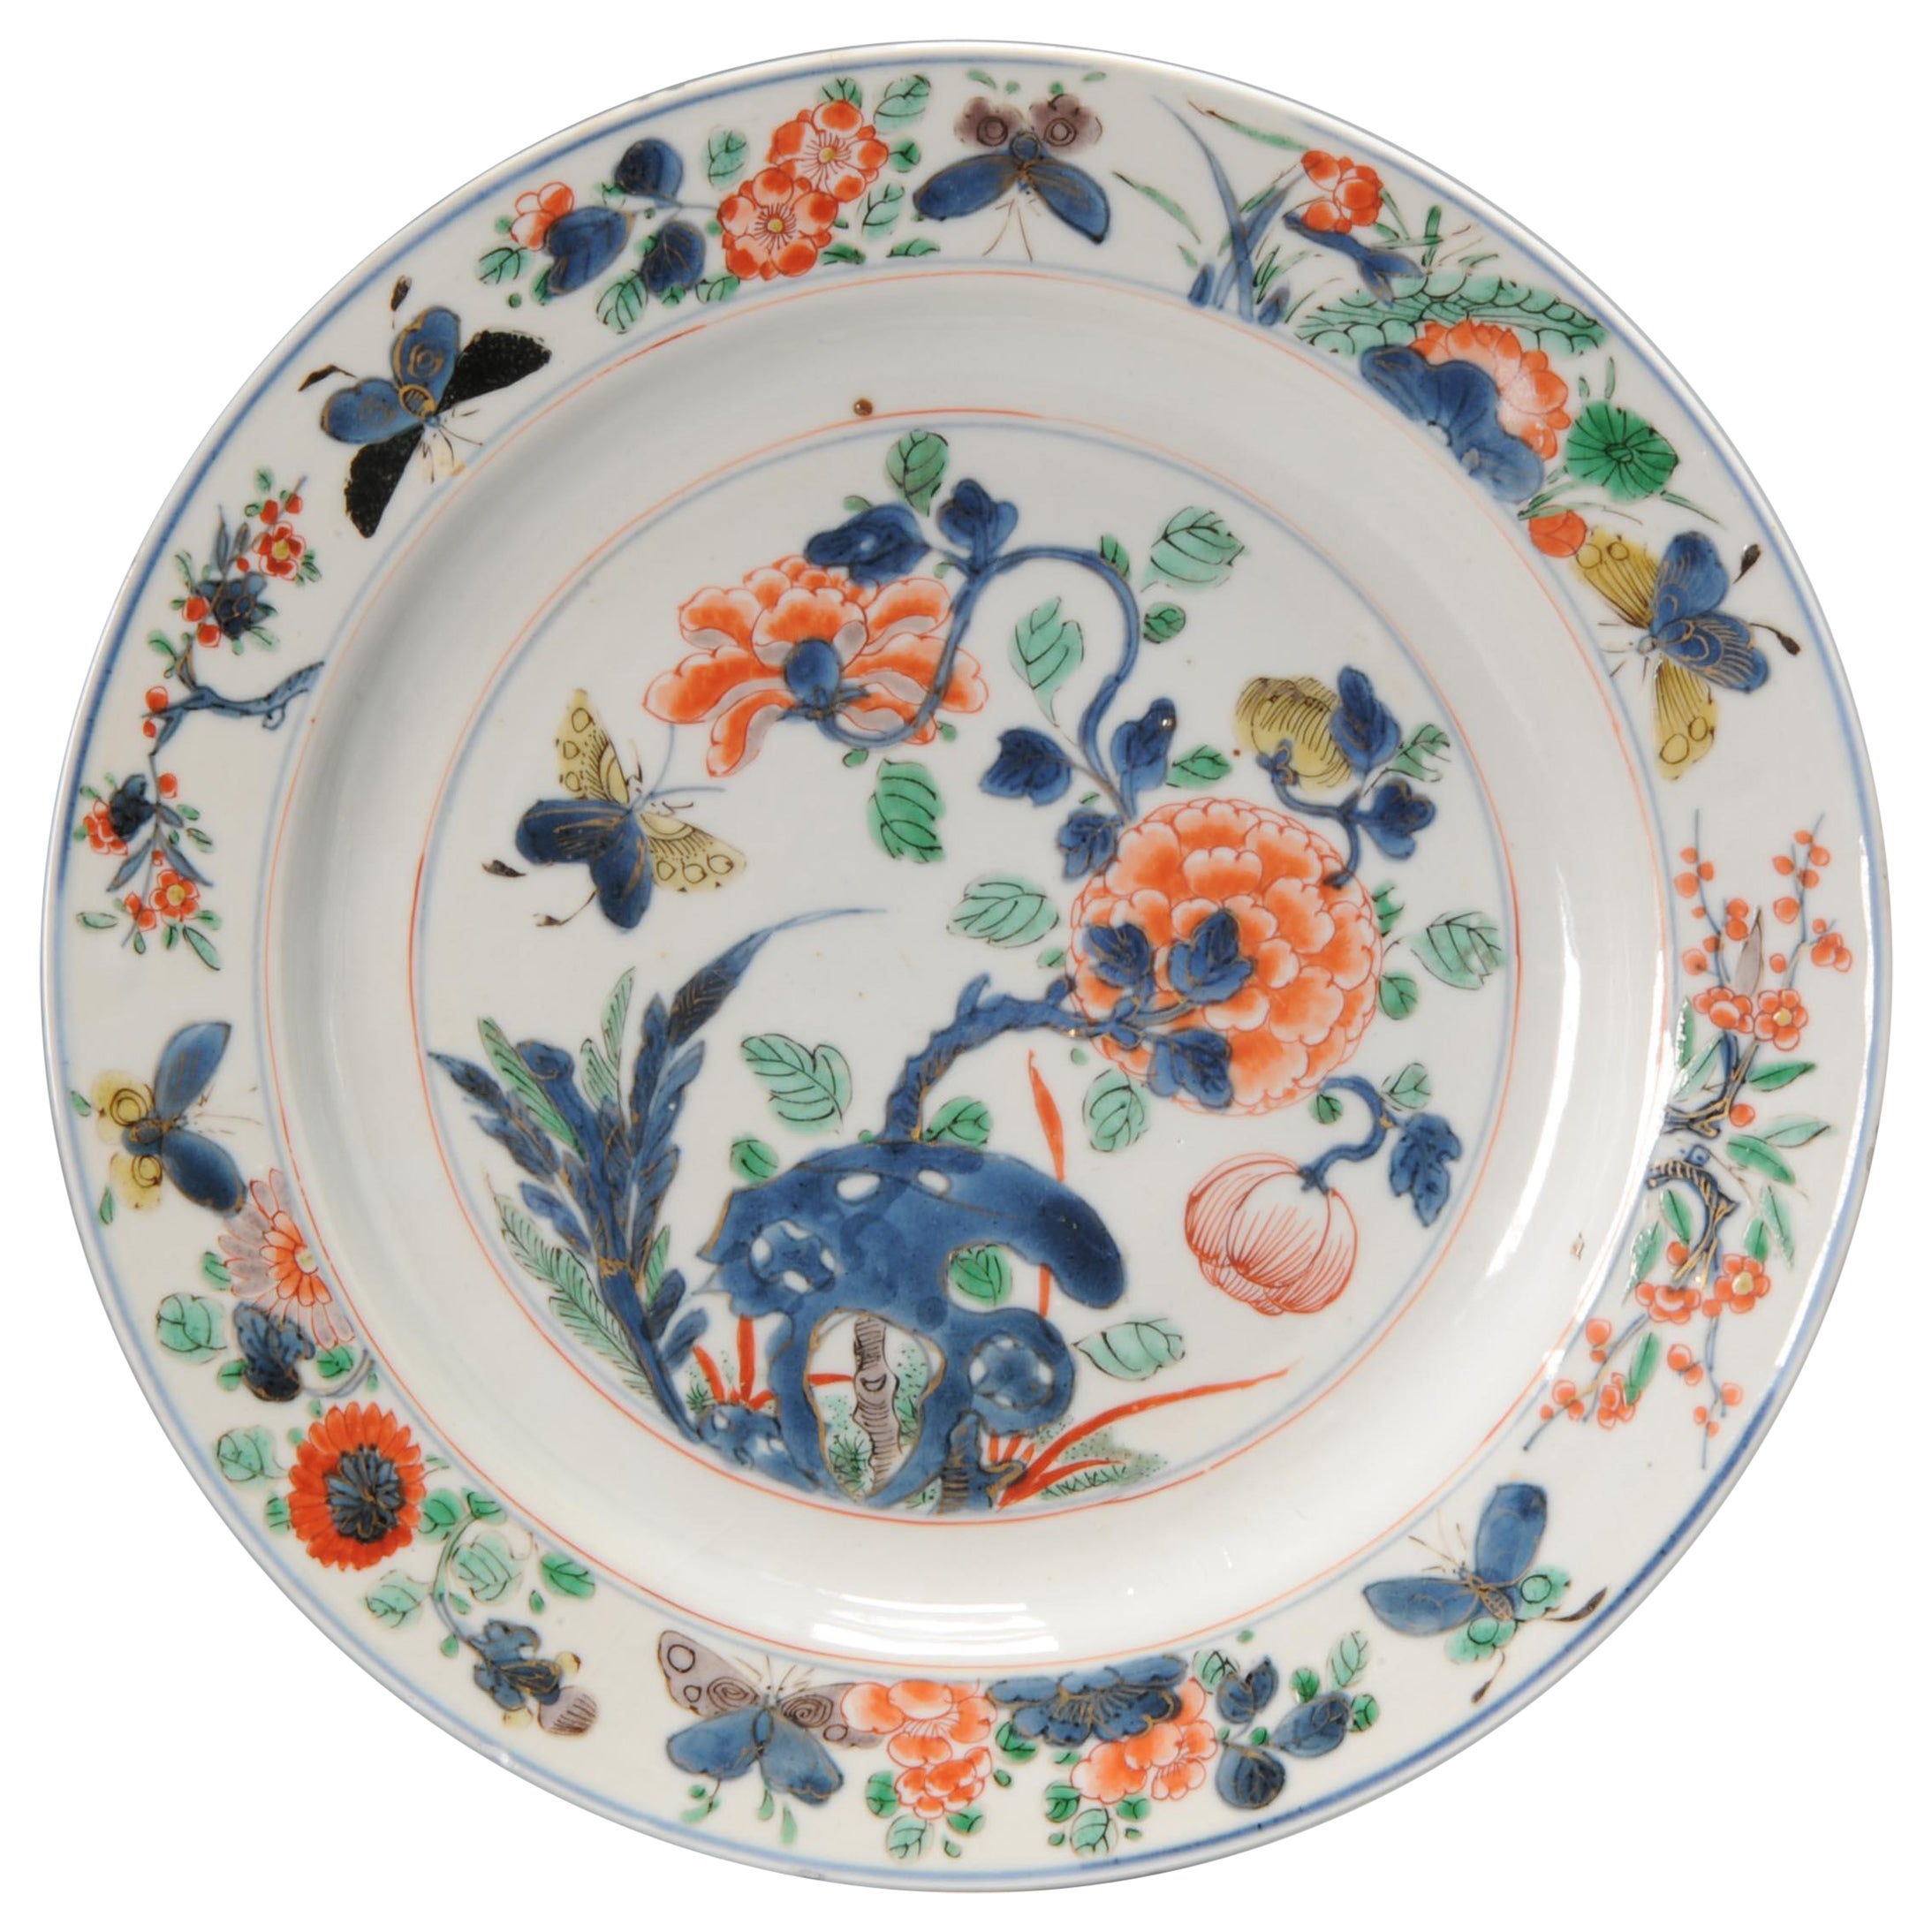 Assiette Famille Verte de qualité de la période Kangxi en porcelaine chinoise, 18e siècle